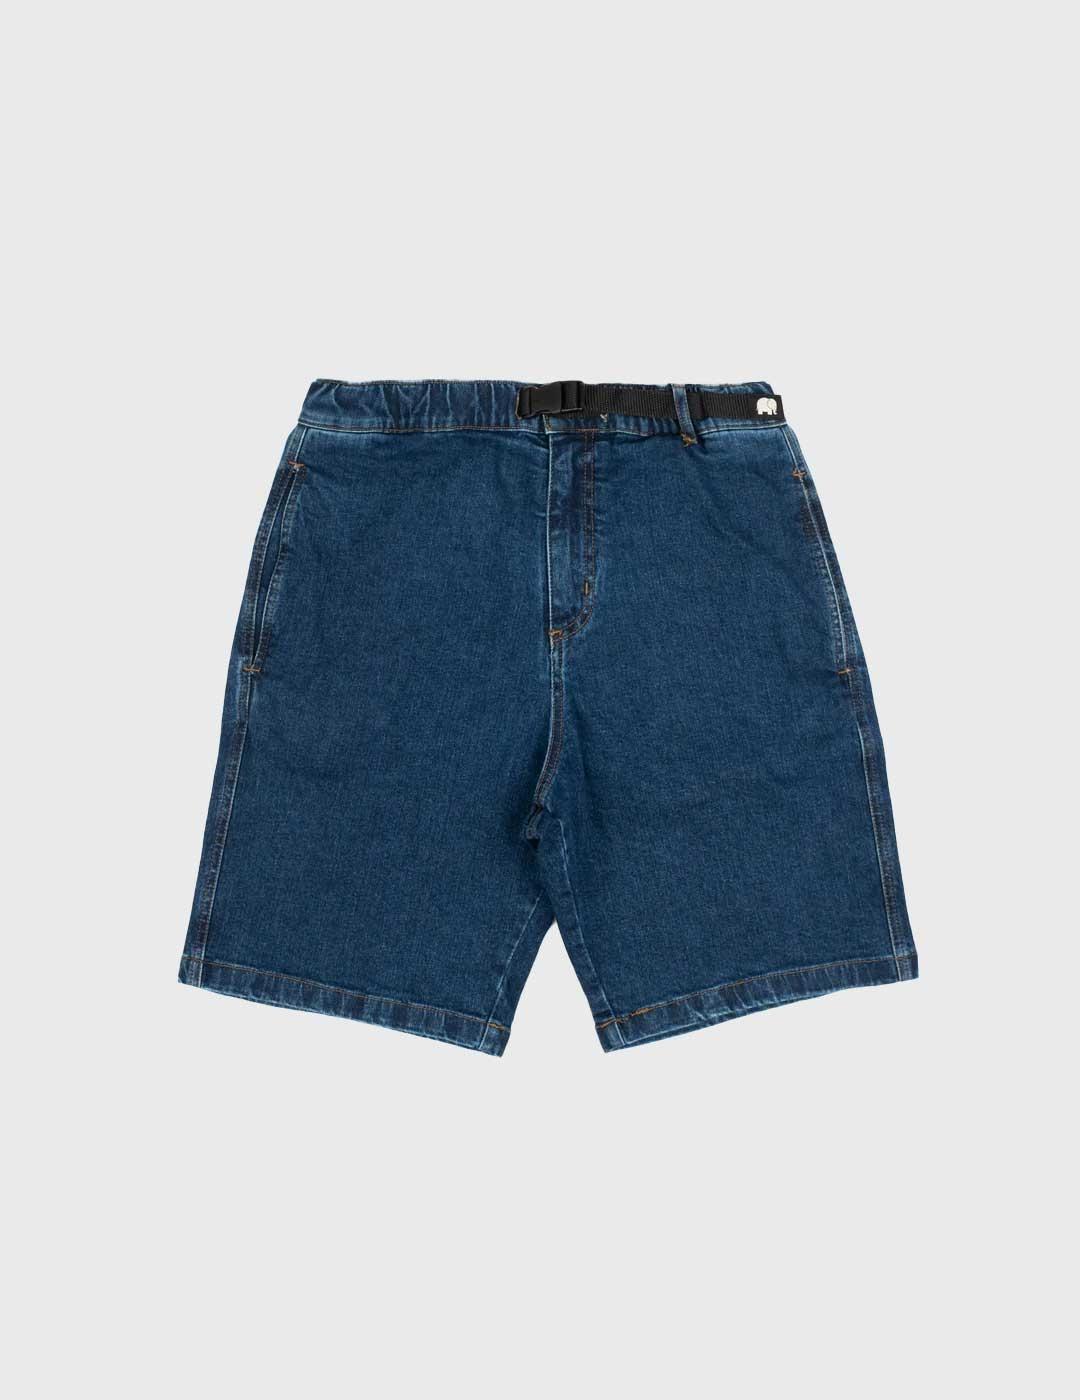 Trendsplant Recycled Climber Shorts Pantalón corto azul